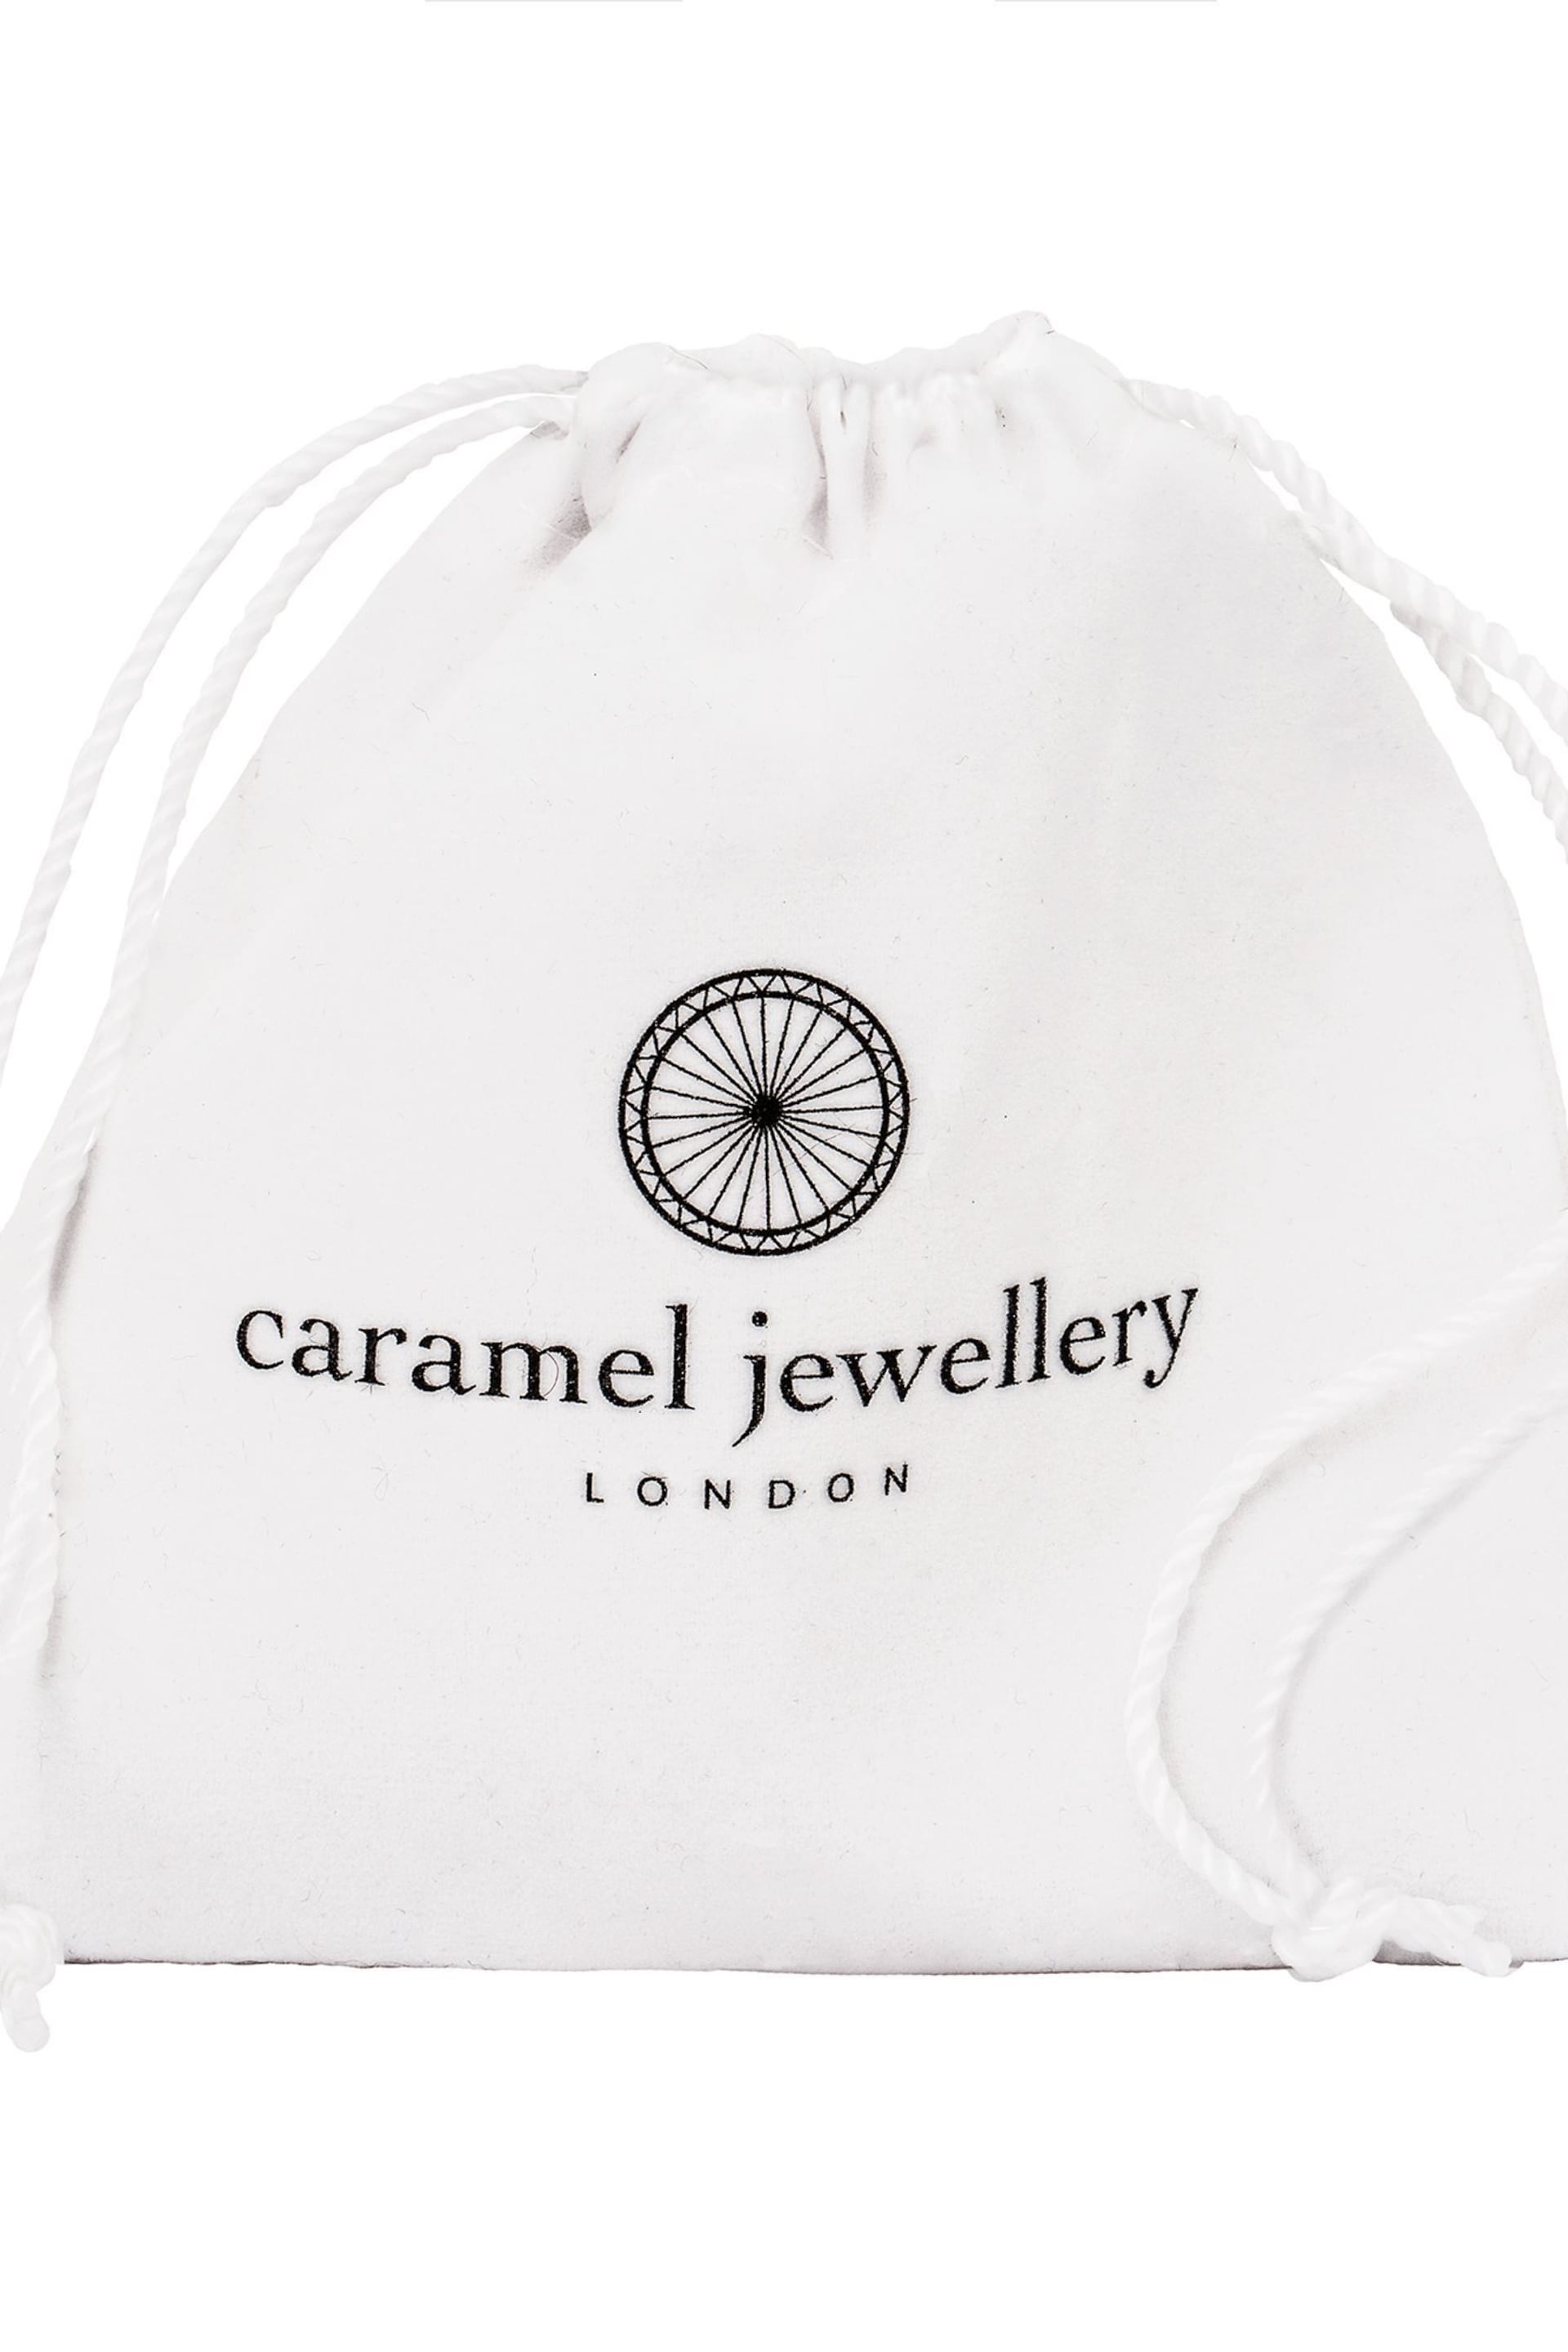 Caramel Jewellery London Gold Tone 'Starry Sky' Pavé Bracelet - Image 4 of 4